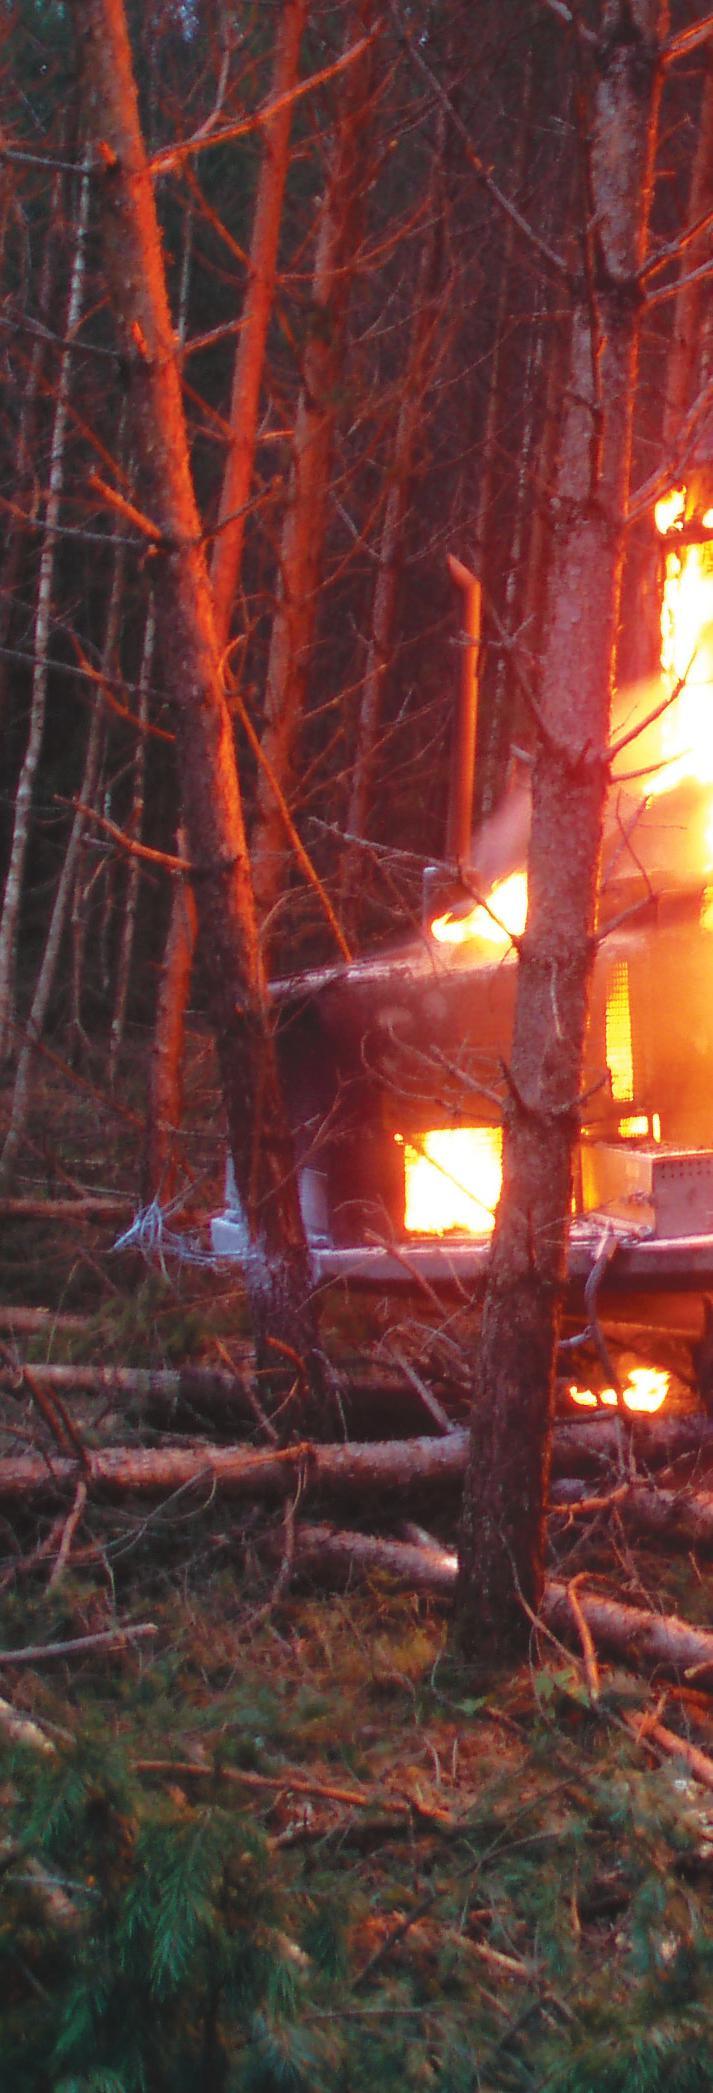 SKOGS- OG ANLEGGSMASKINER KAN BRENNE Statistikken viser at skogs- og anleggsmaskiner brenner urovekkende ofte. Det er mange årsaker til at de brenner.